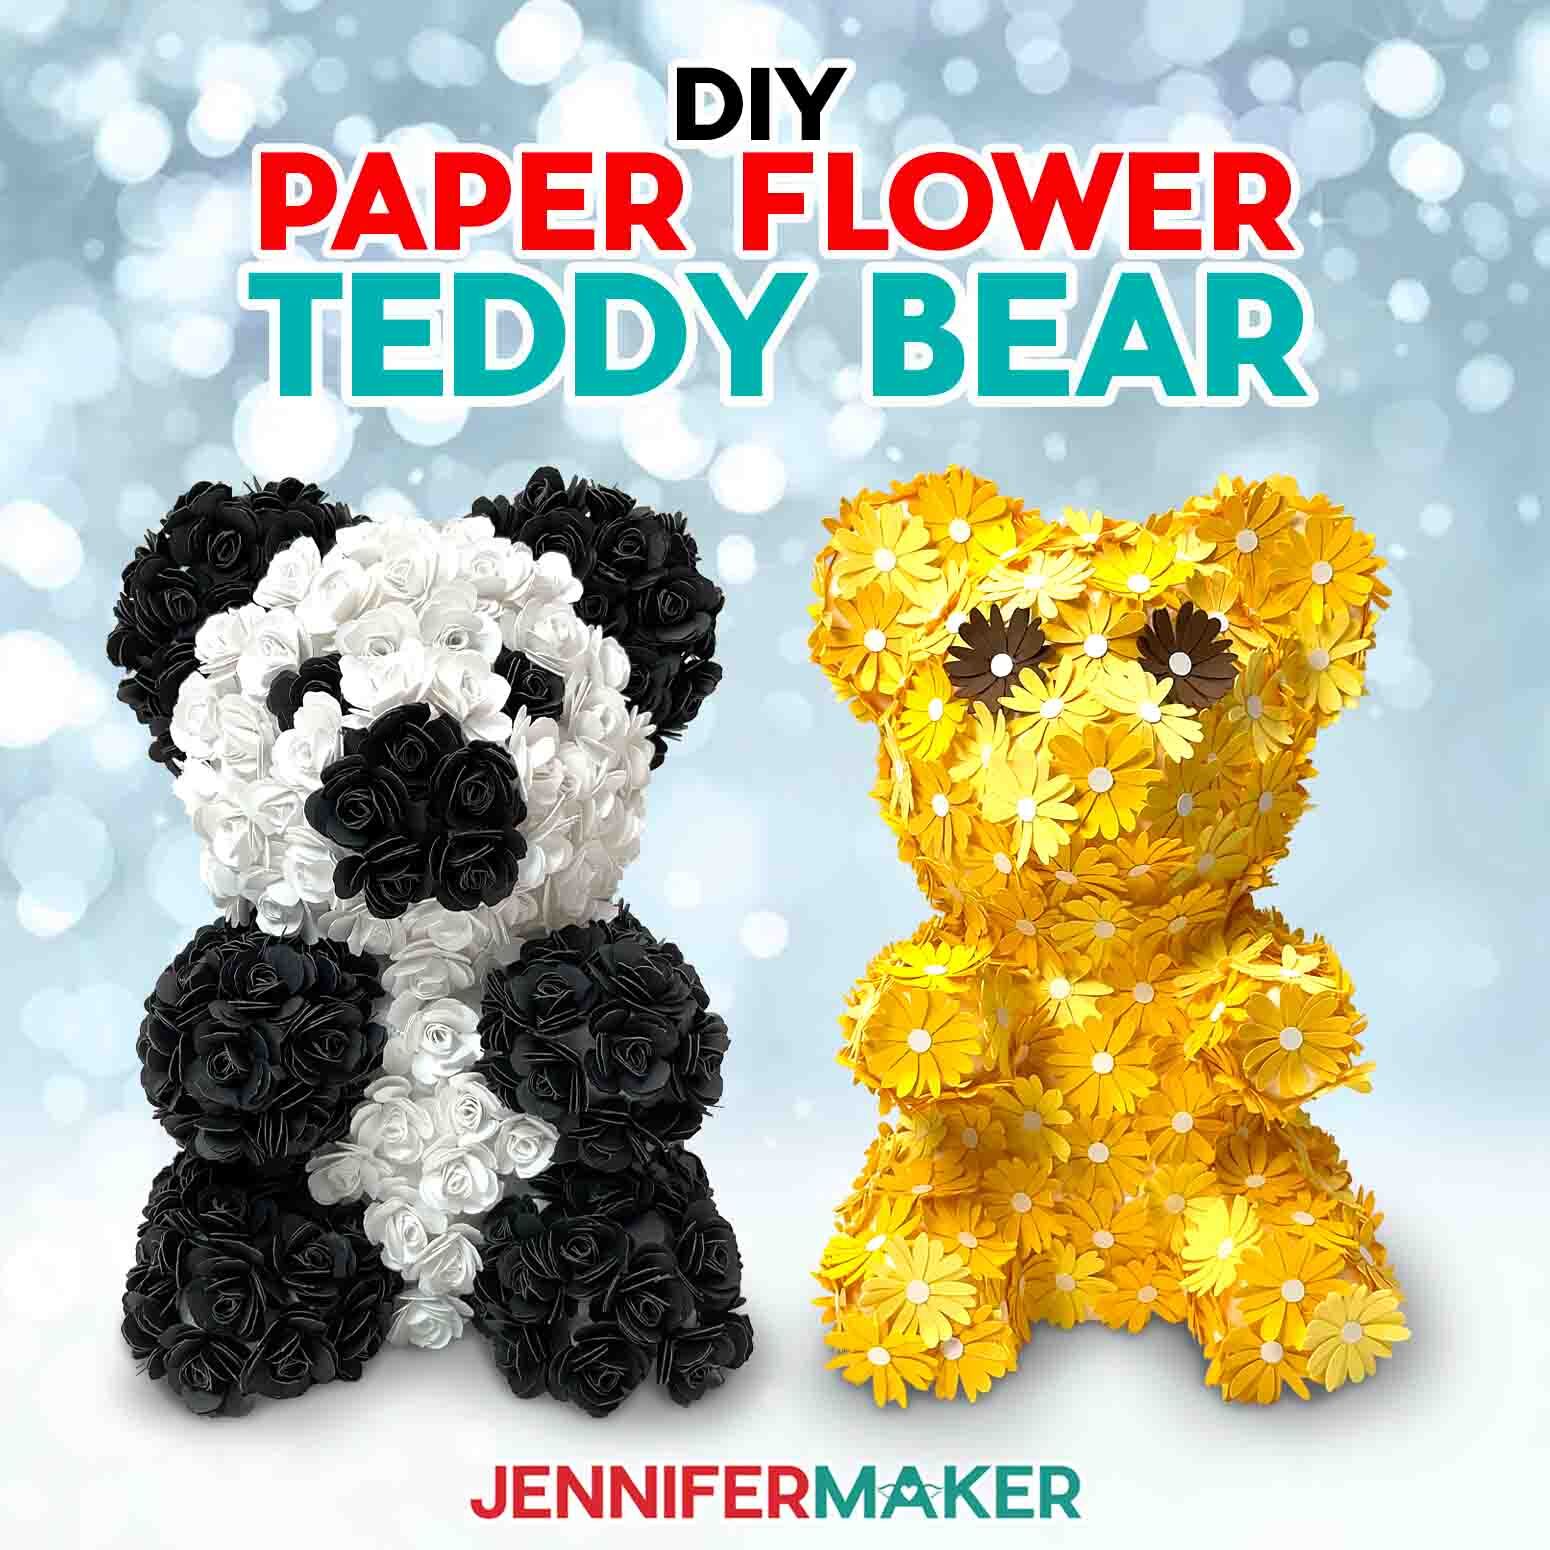 Flower Teddy Bear: Rose Panda And Easy Daisy Bears